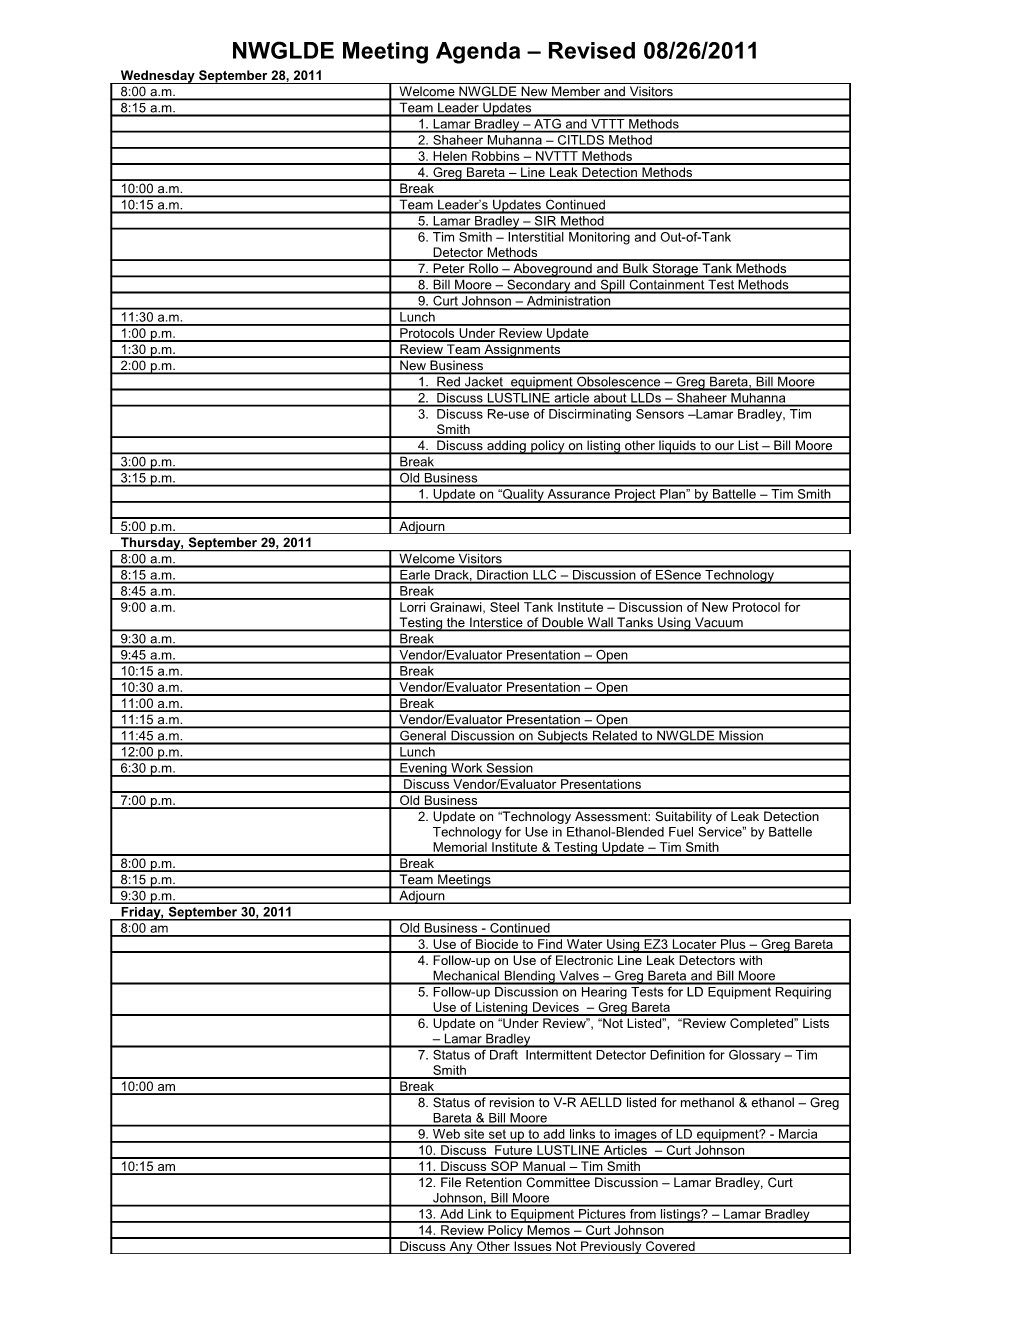 NWGLDE Meeting Agenda Revised 08/26/2011